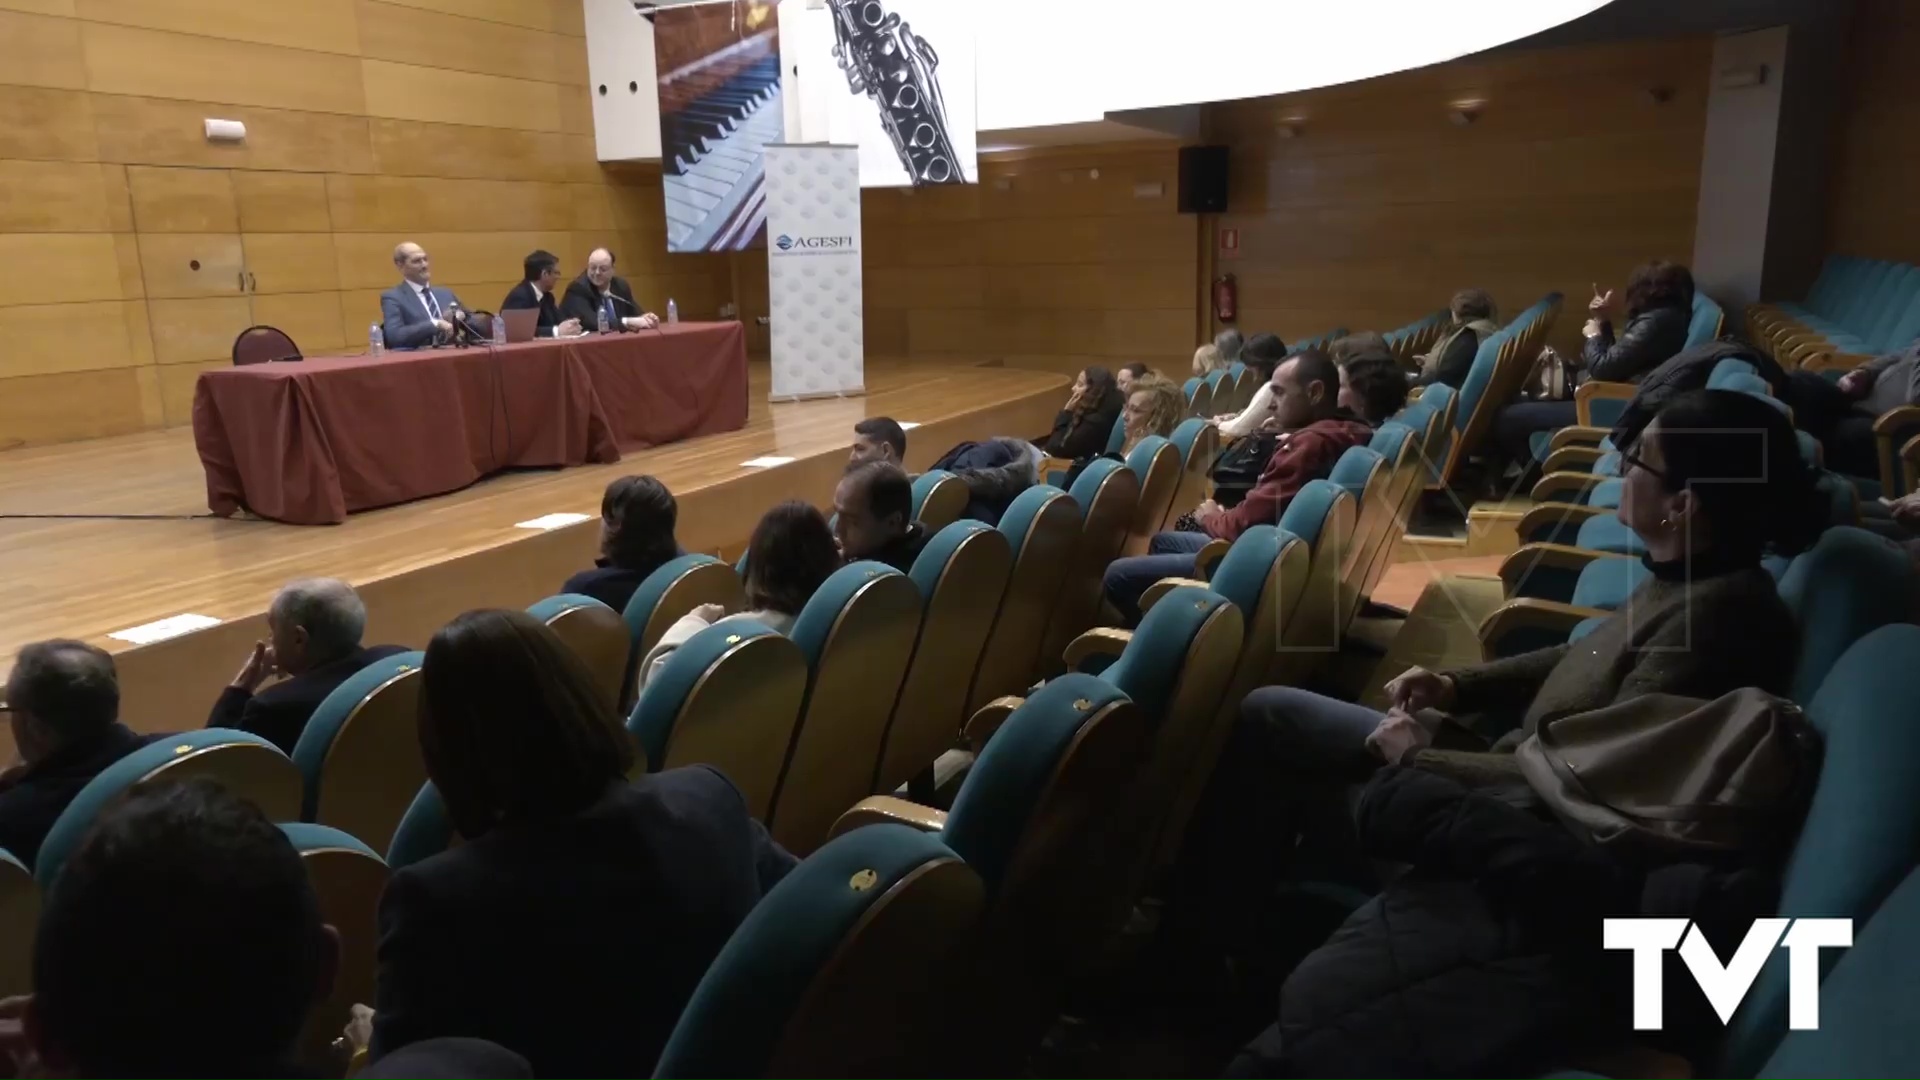 Imagen de Torrevieja acoge una sesión divulgativa sobre factura electrónica 